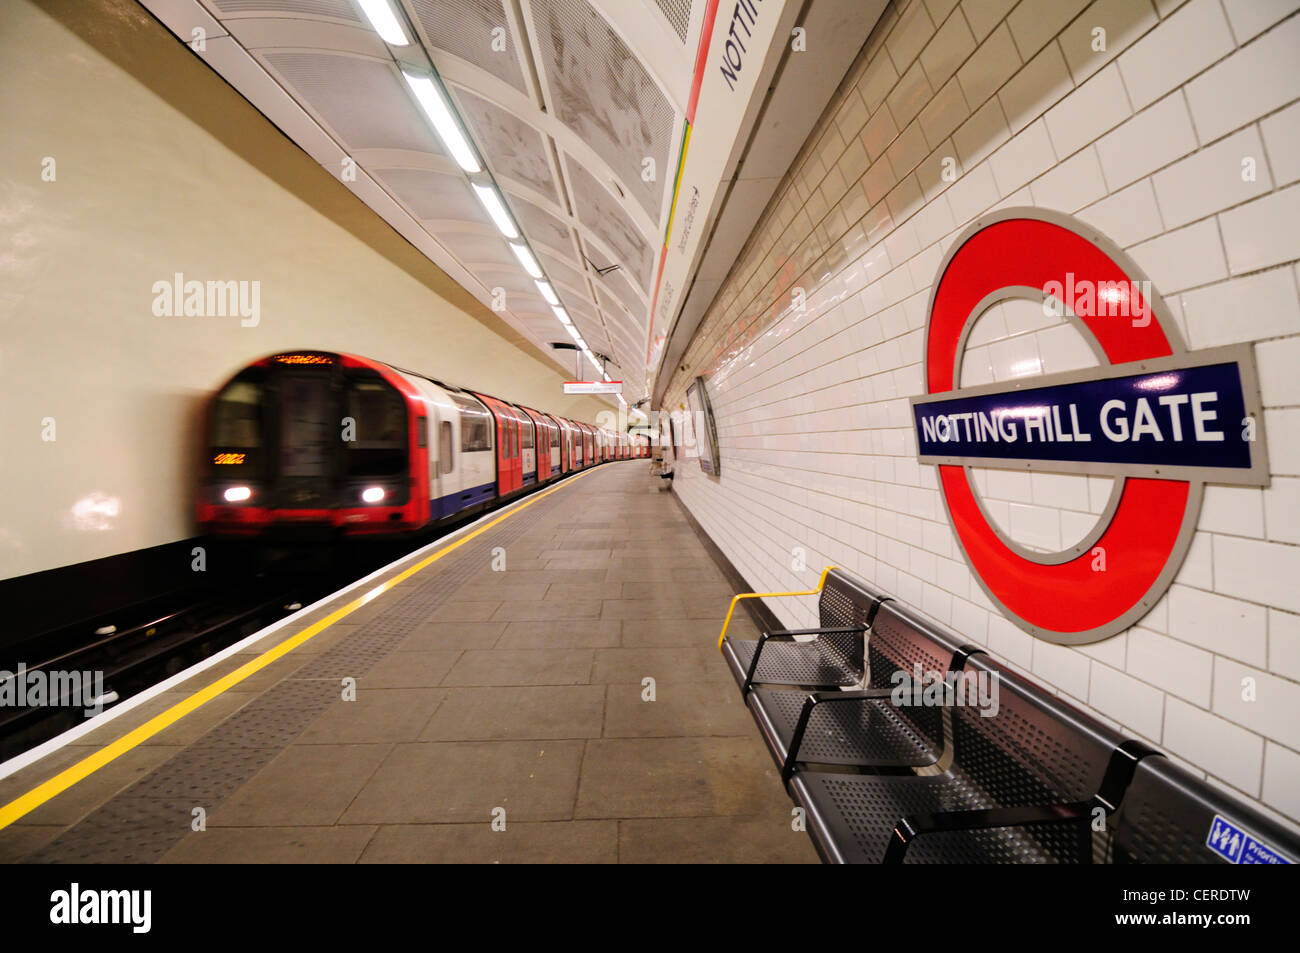 Une ligne de train au départ du tube central station de métro Notting Hill Gate. Banque D'Images